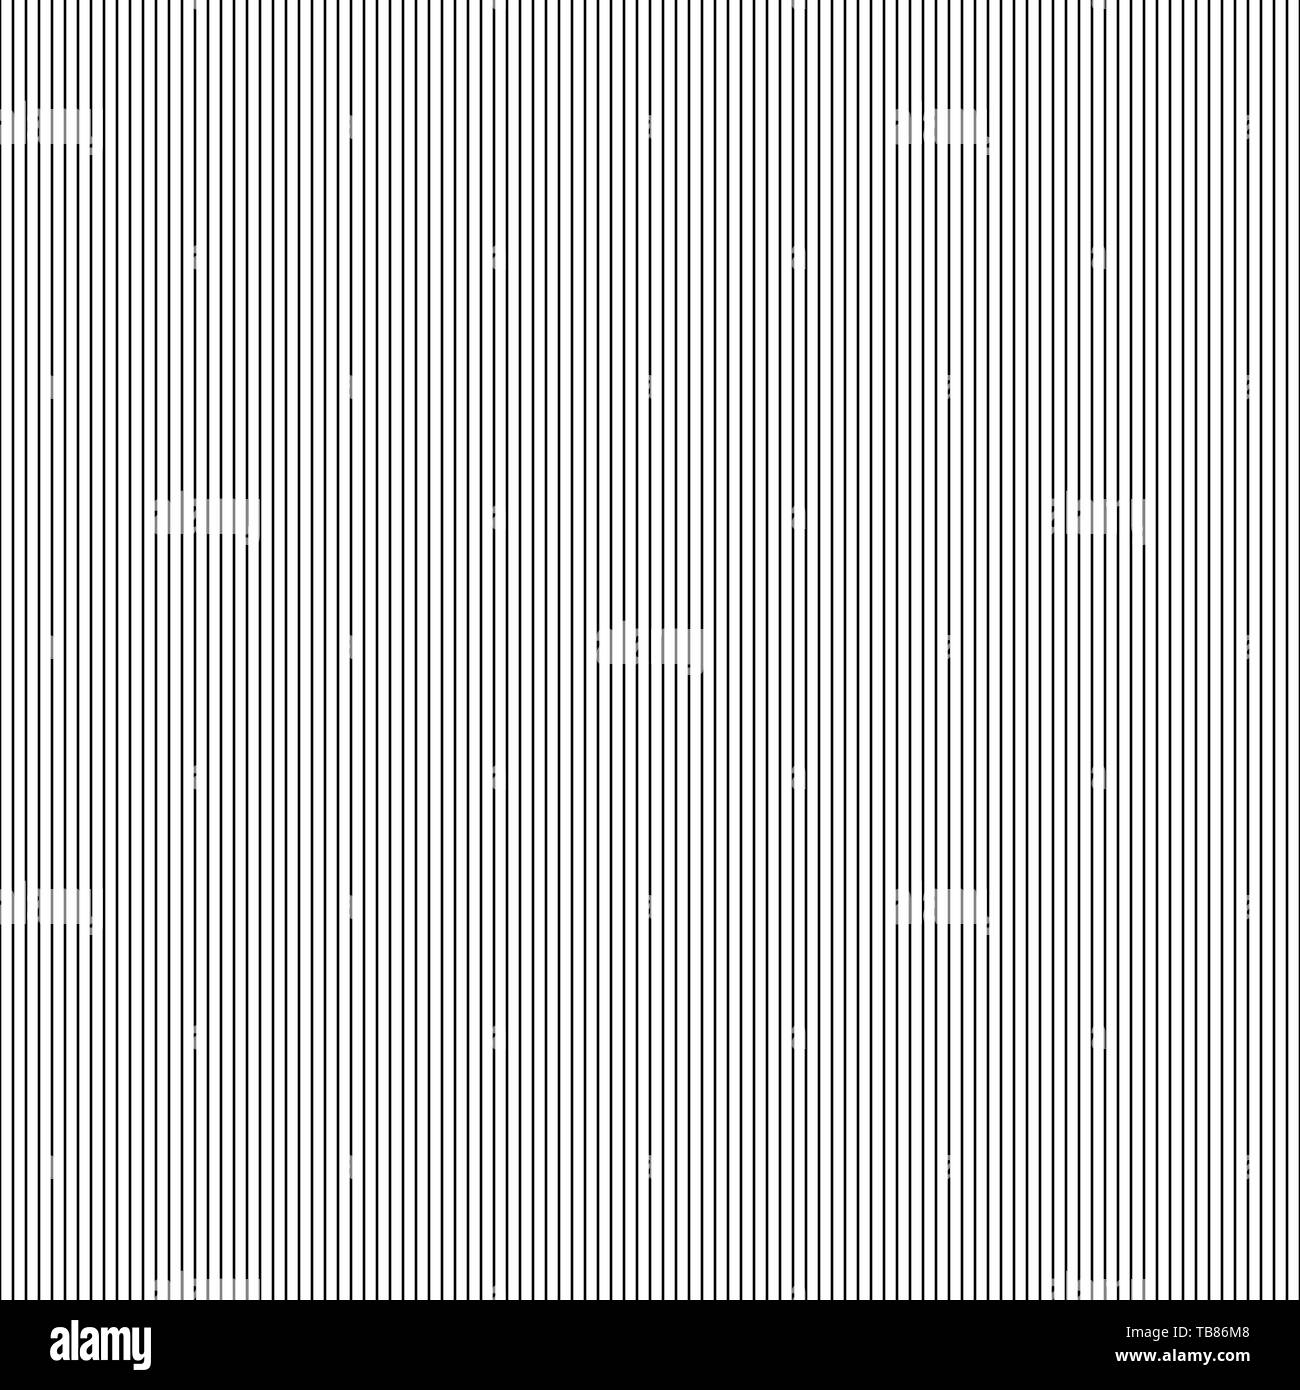 Vertikale Linien auf weißem Hintergrund. Abstrakte Muster mit vertikalen Linien. Vector Illustration. Stock Vektor